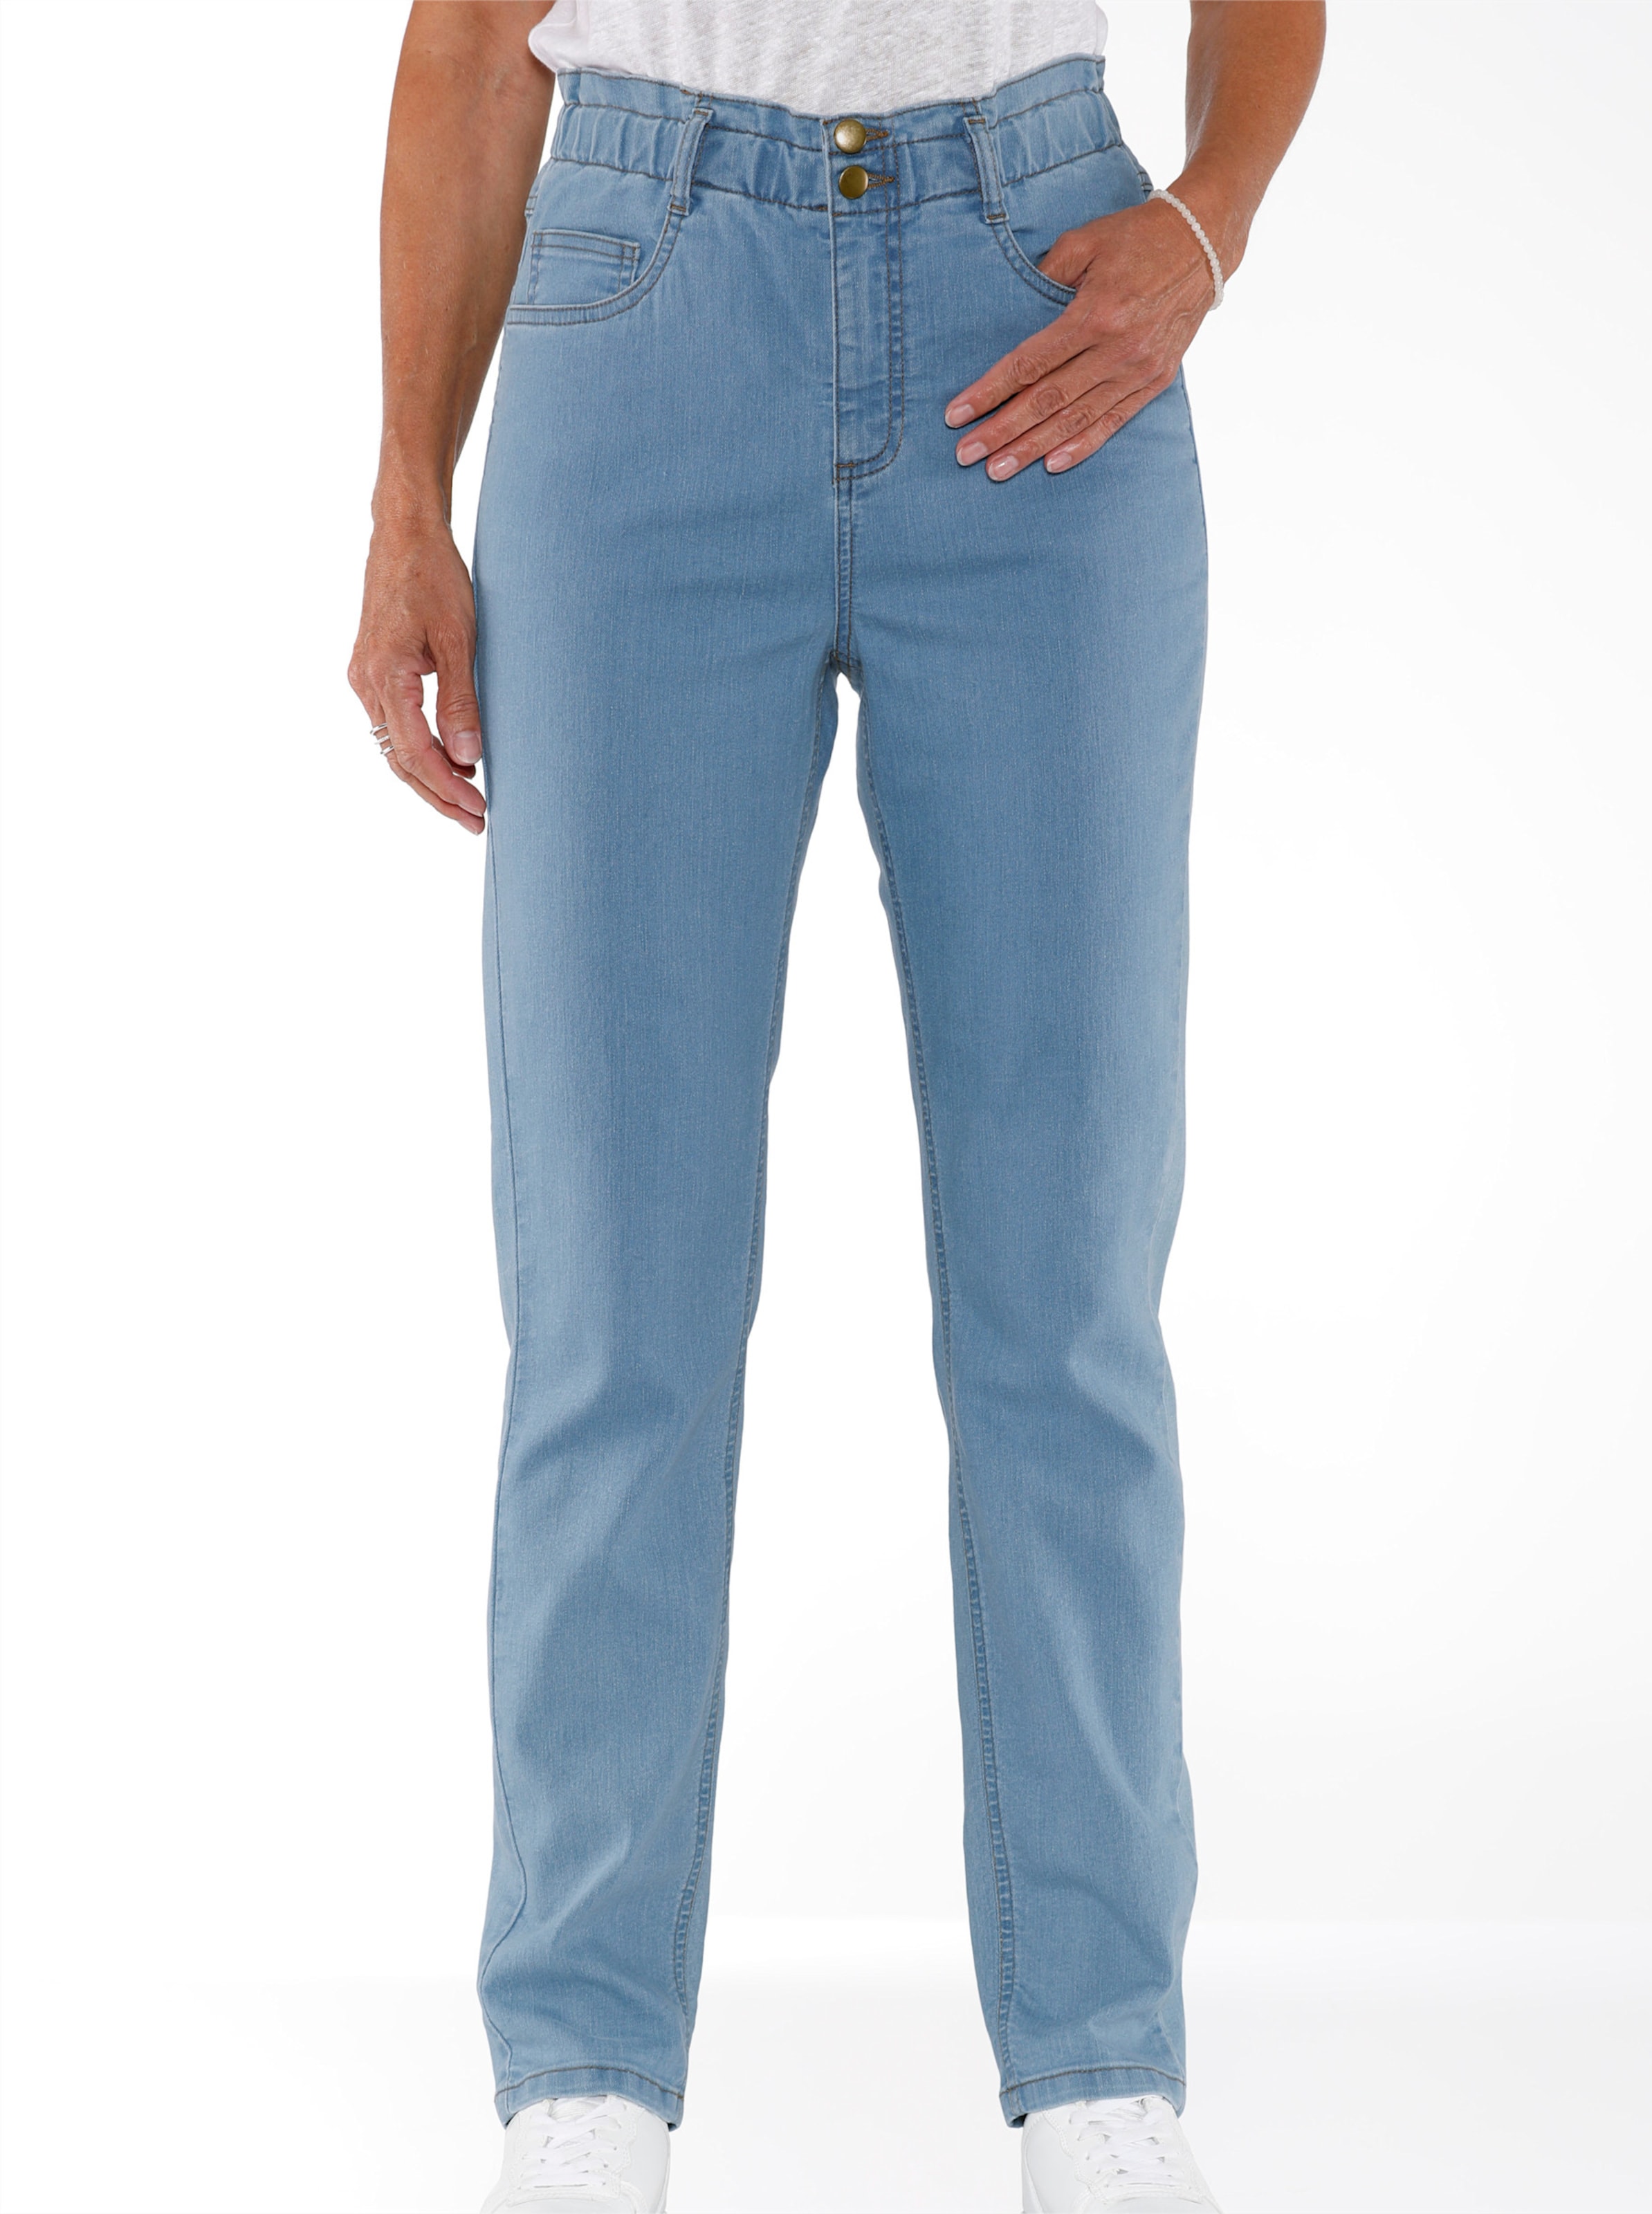 Witt Damen Jeans im aktuellen Paperbag-Schnitt, blue-bleached